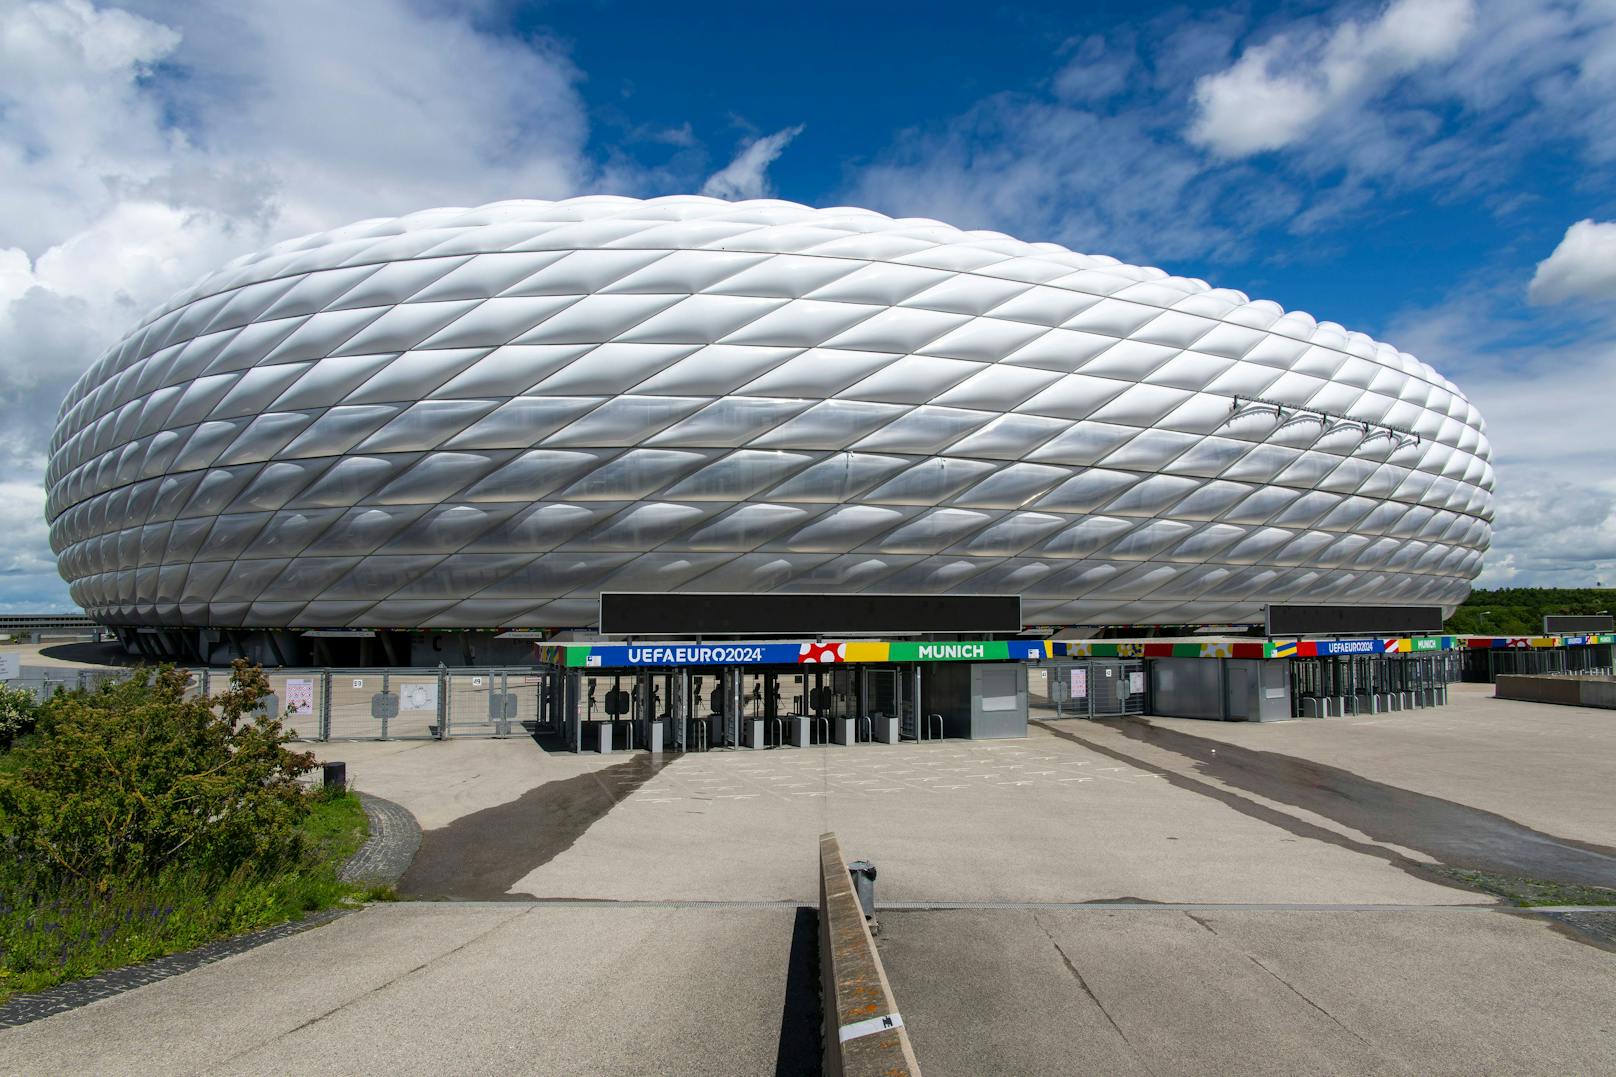 <strong>Munich Footbal Arena:</strong> Die Munich Football Arena alias "Allianz Arena" ist den meisten Fans sicher durch denkwürdige Champions League Abende und die einzigartige Fassade bekannt. Bei Heimspielen der Bayern leuchtet das Stadion in Rot, bei Länderspielen kann die Farbe nach Wunsch geändert werden.